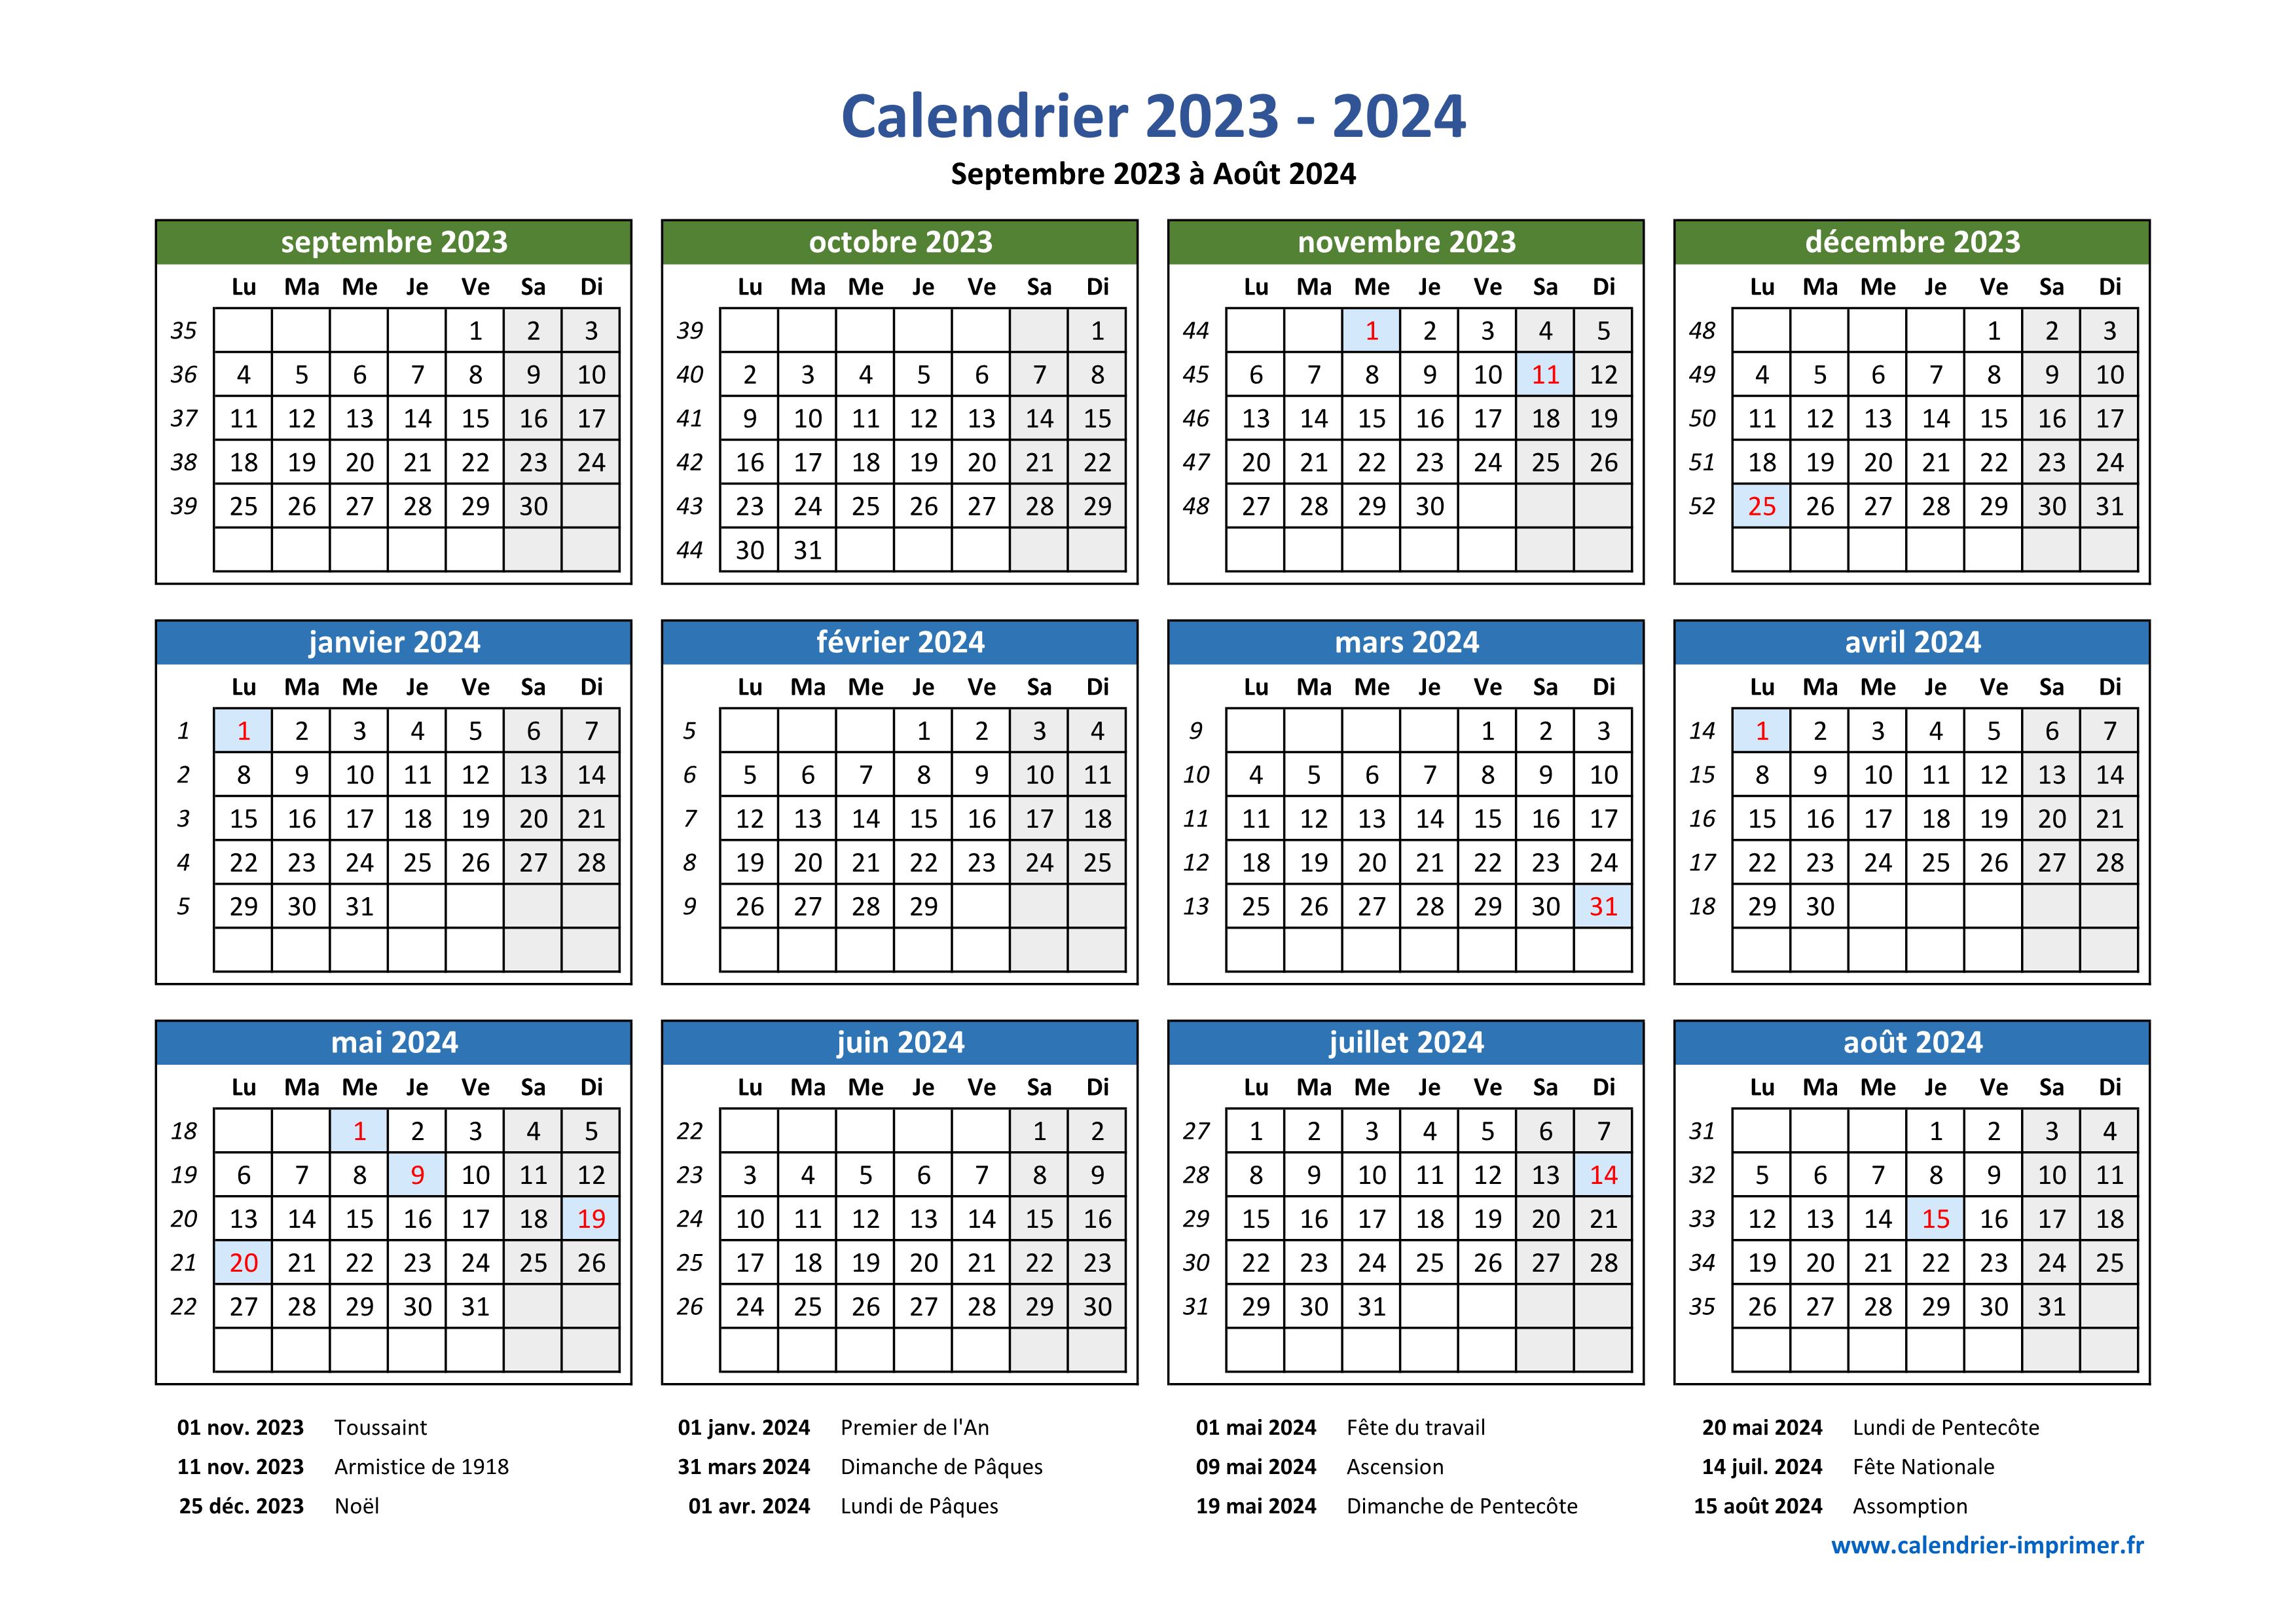 Calendrier 2023-2024 à imprimer